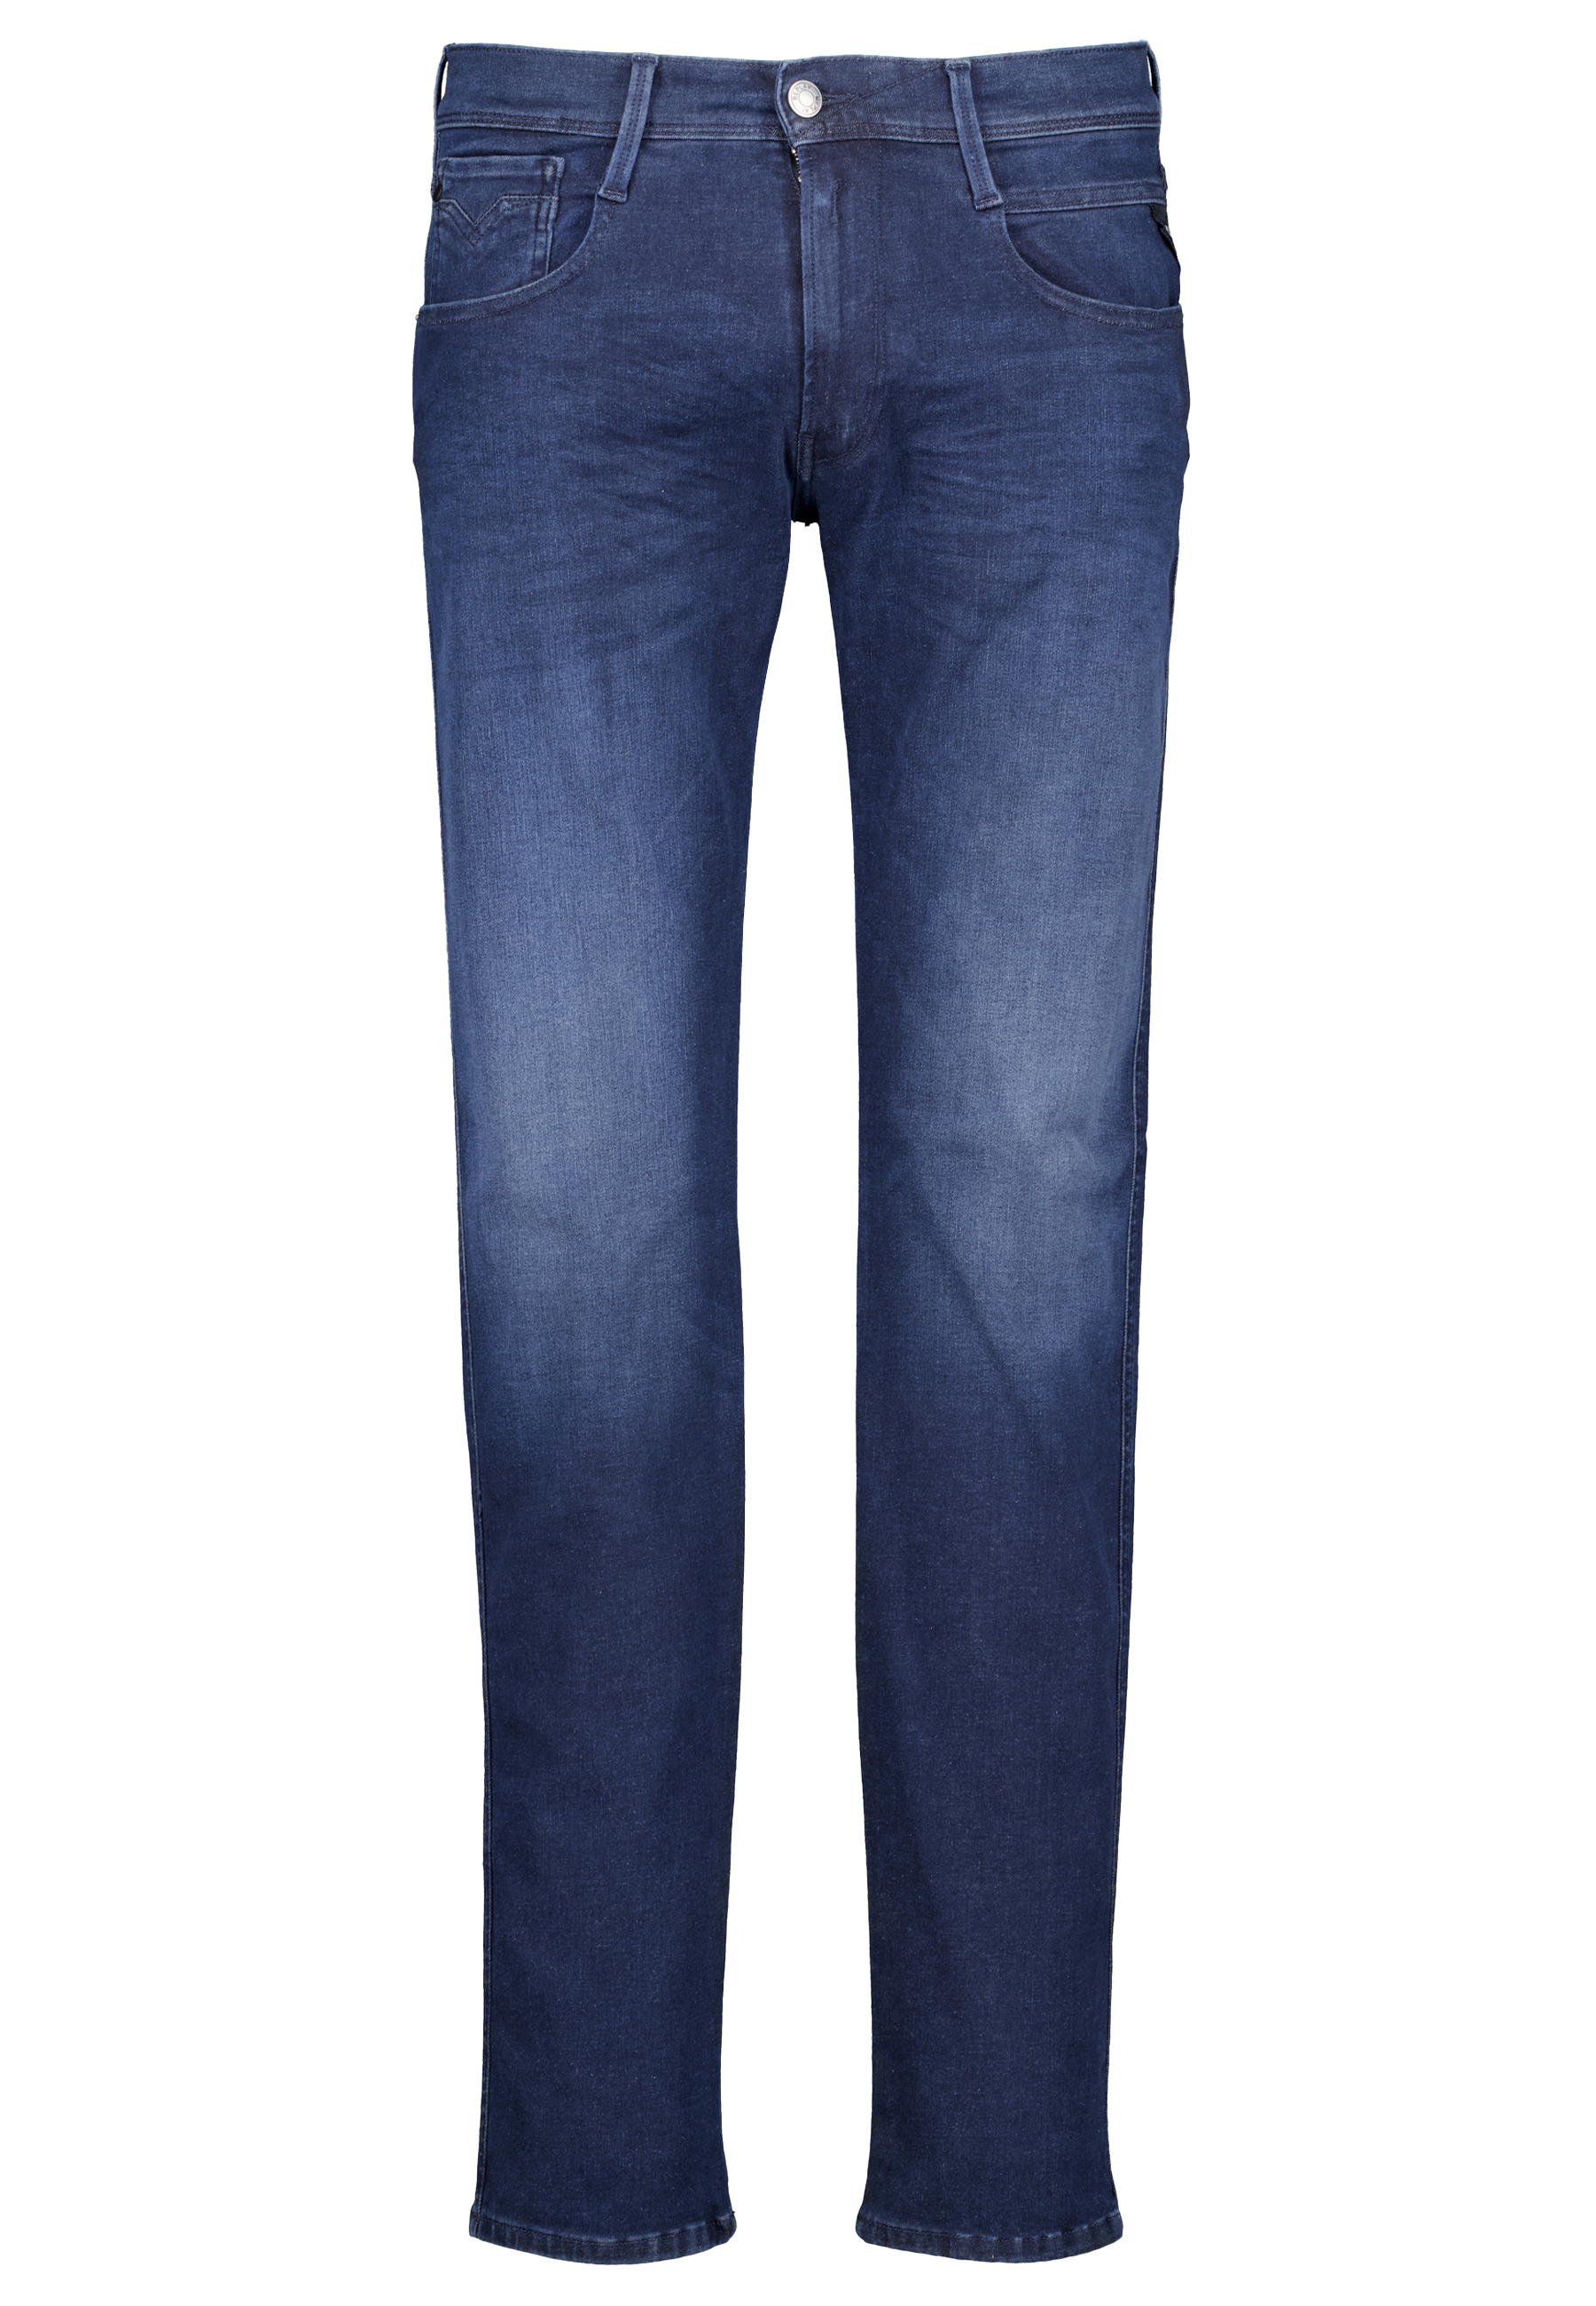 Replay jeans blauw Heren maat 33/34